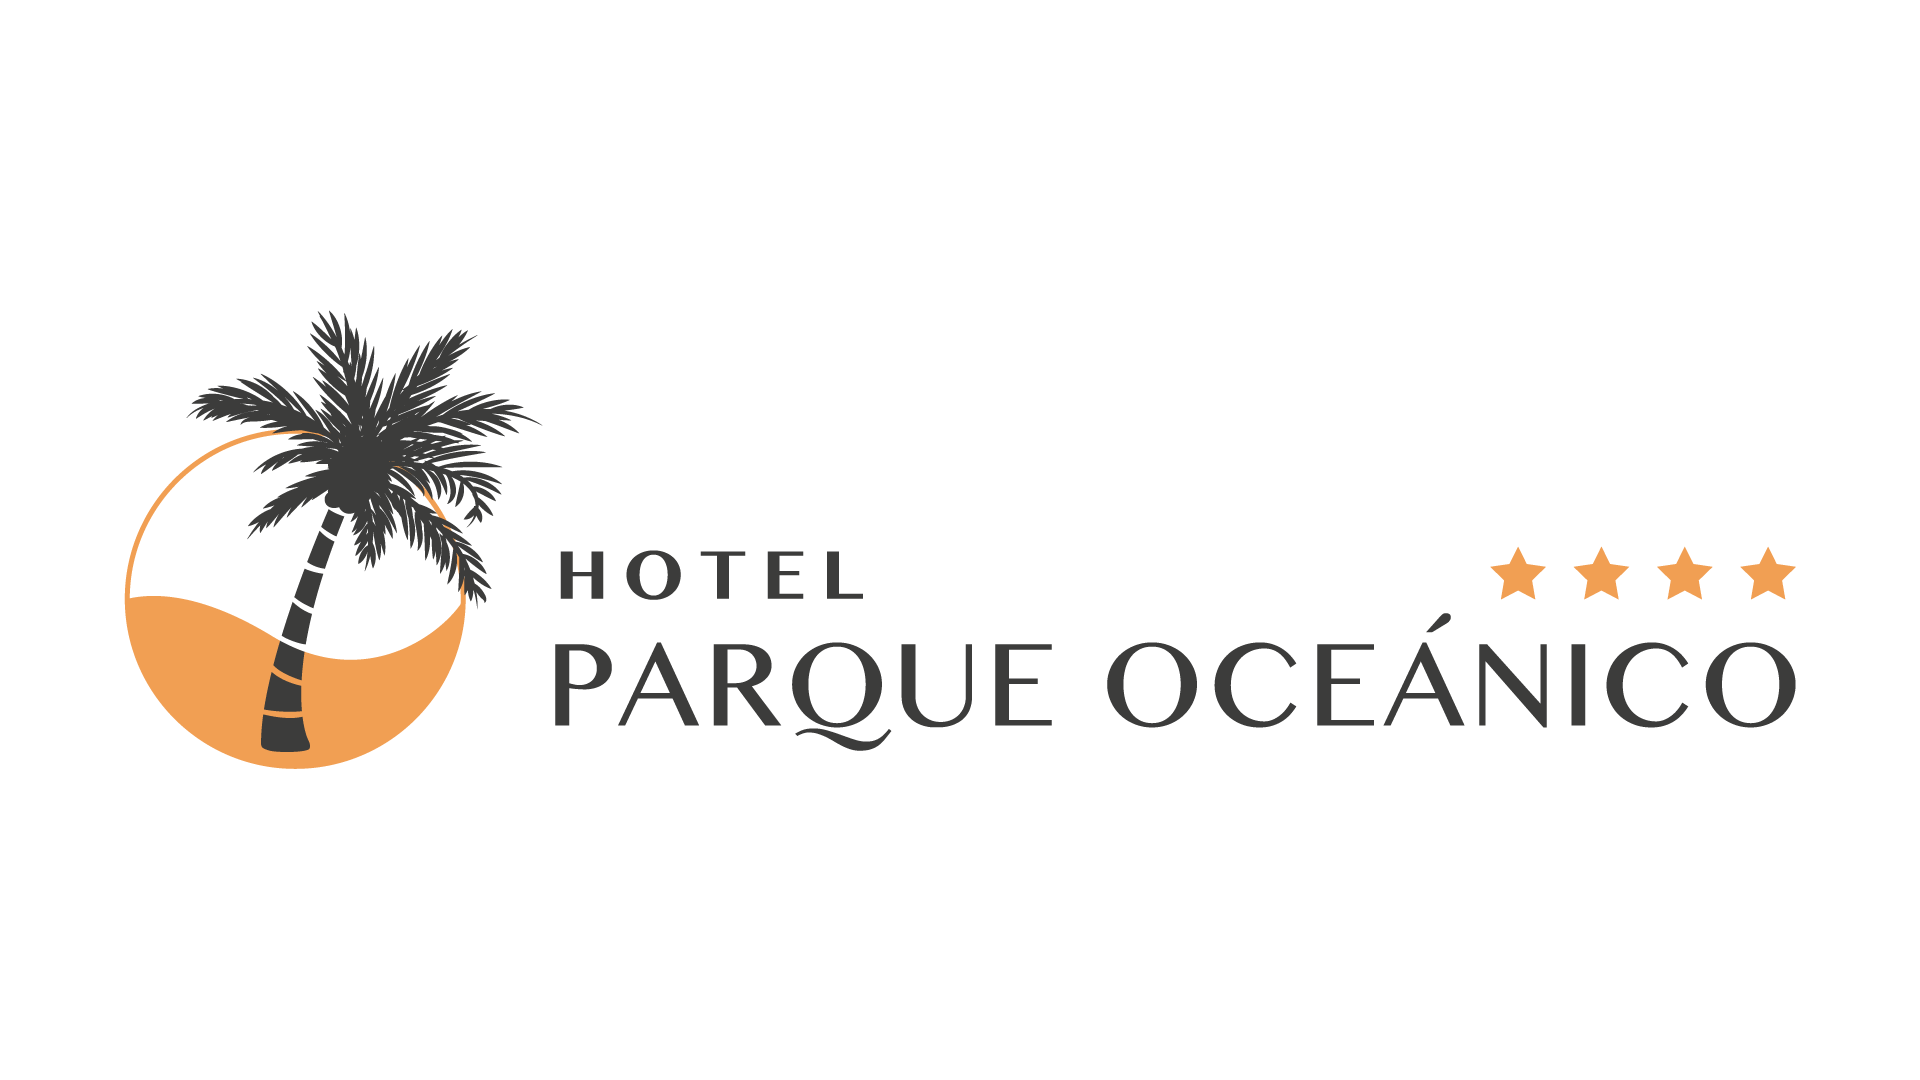 (c) Hotelparqueoceanico.com.uy